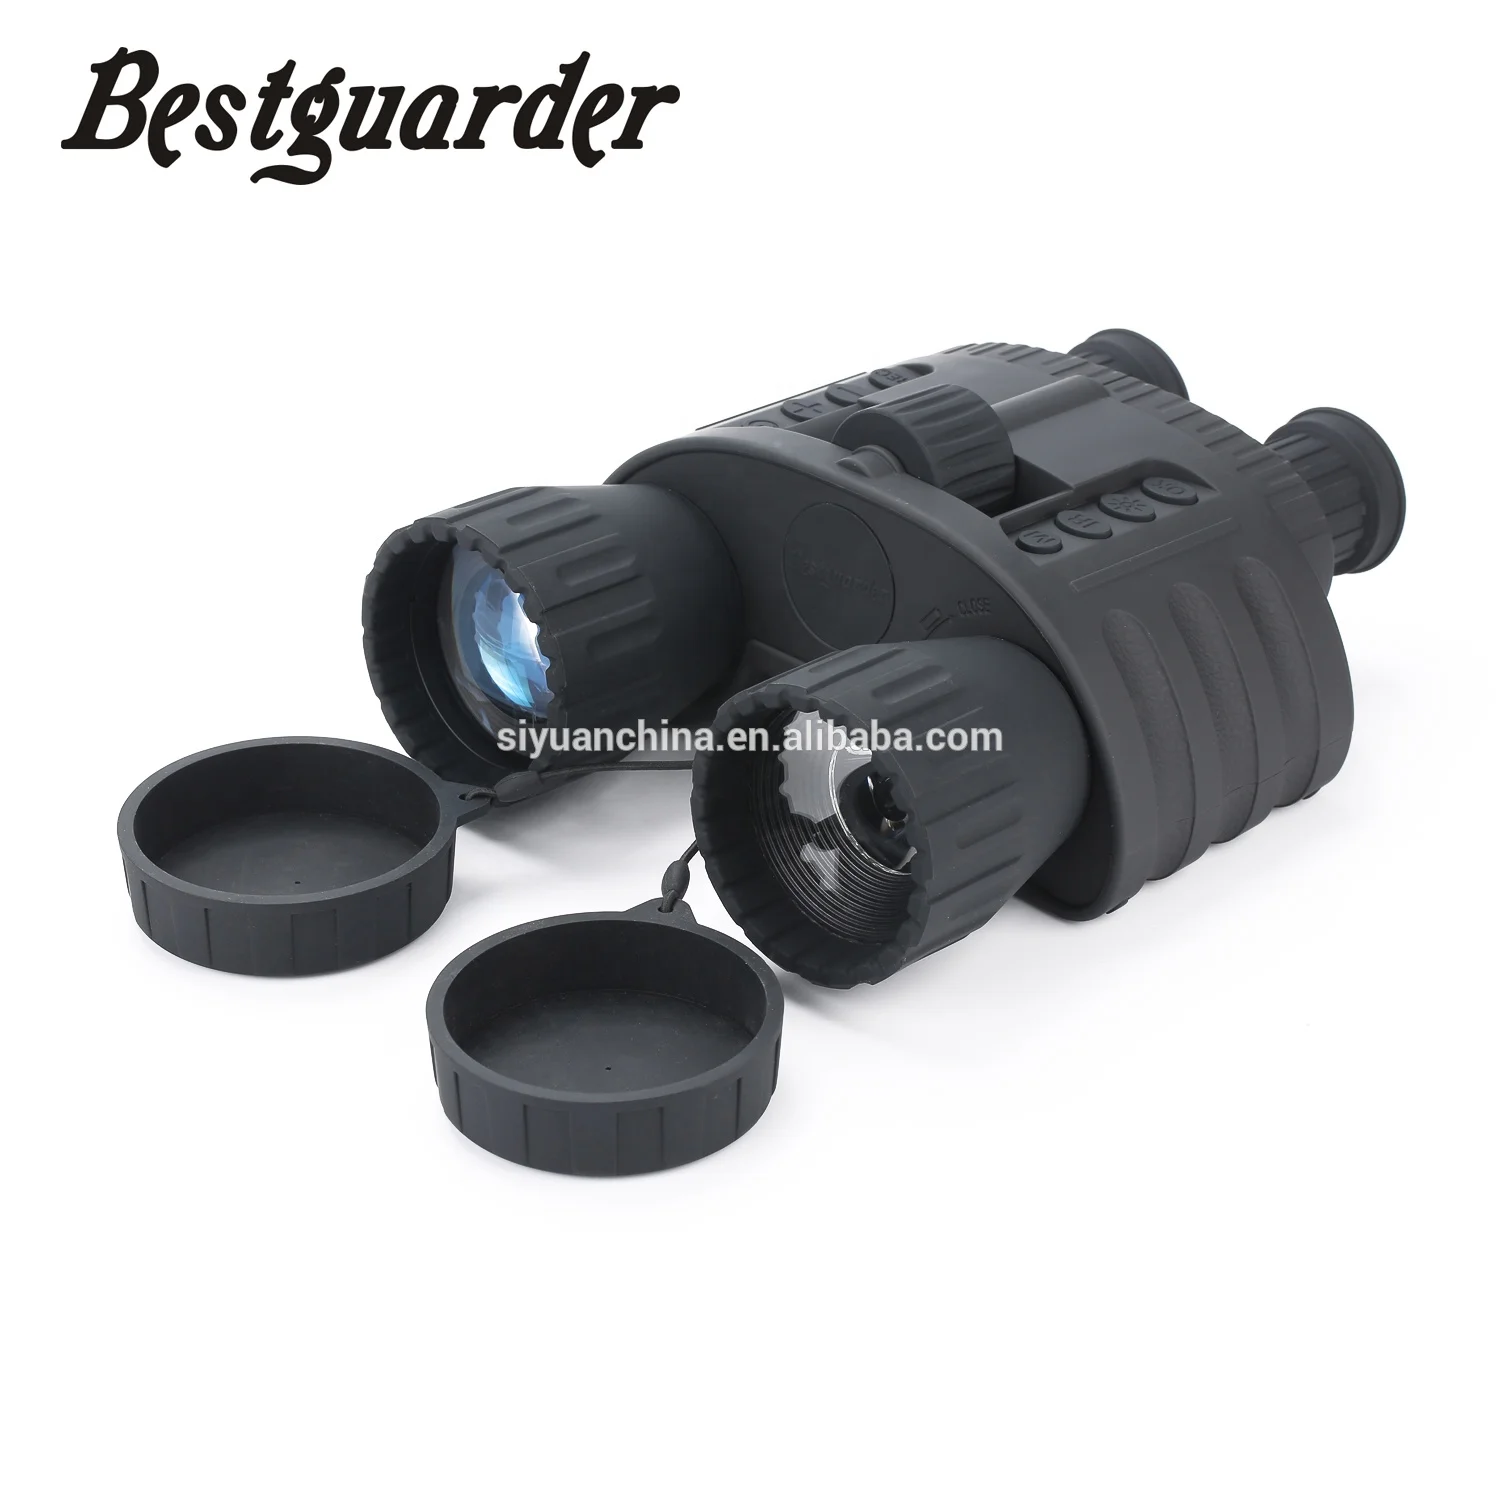 Mejor guarder WG80 4x50 Digital noche visión binocular con grabación de 300 m